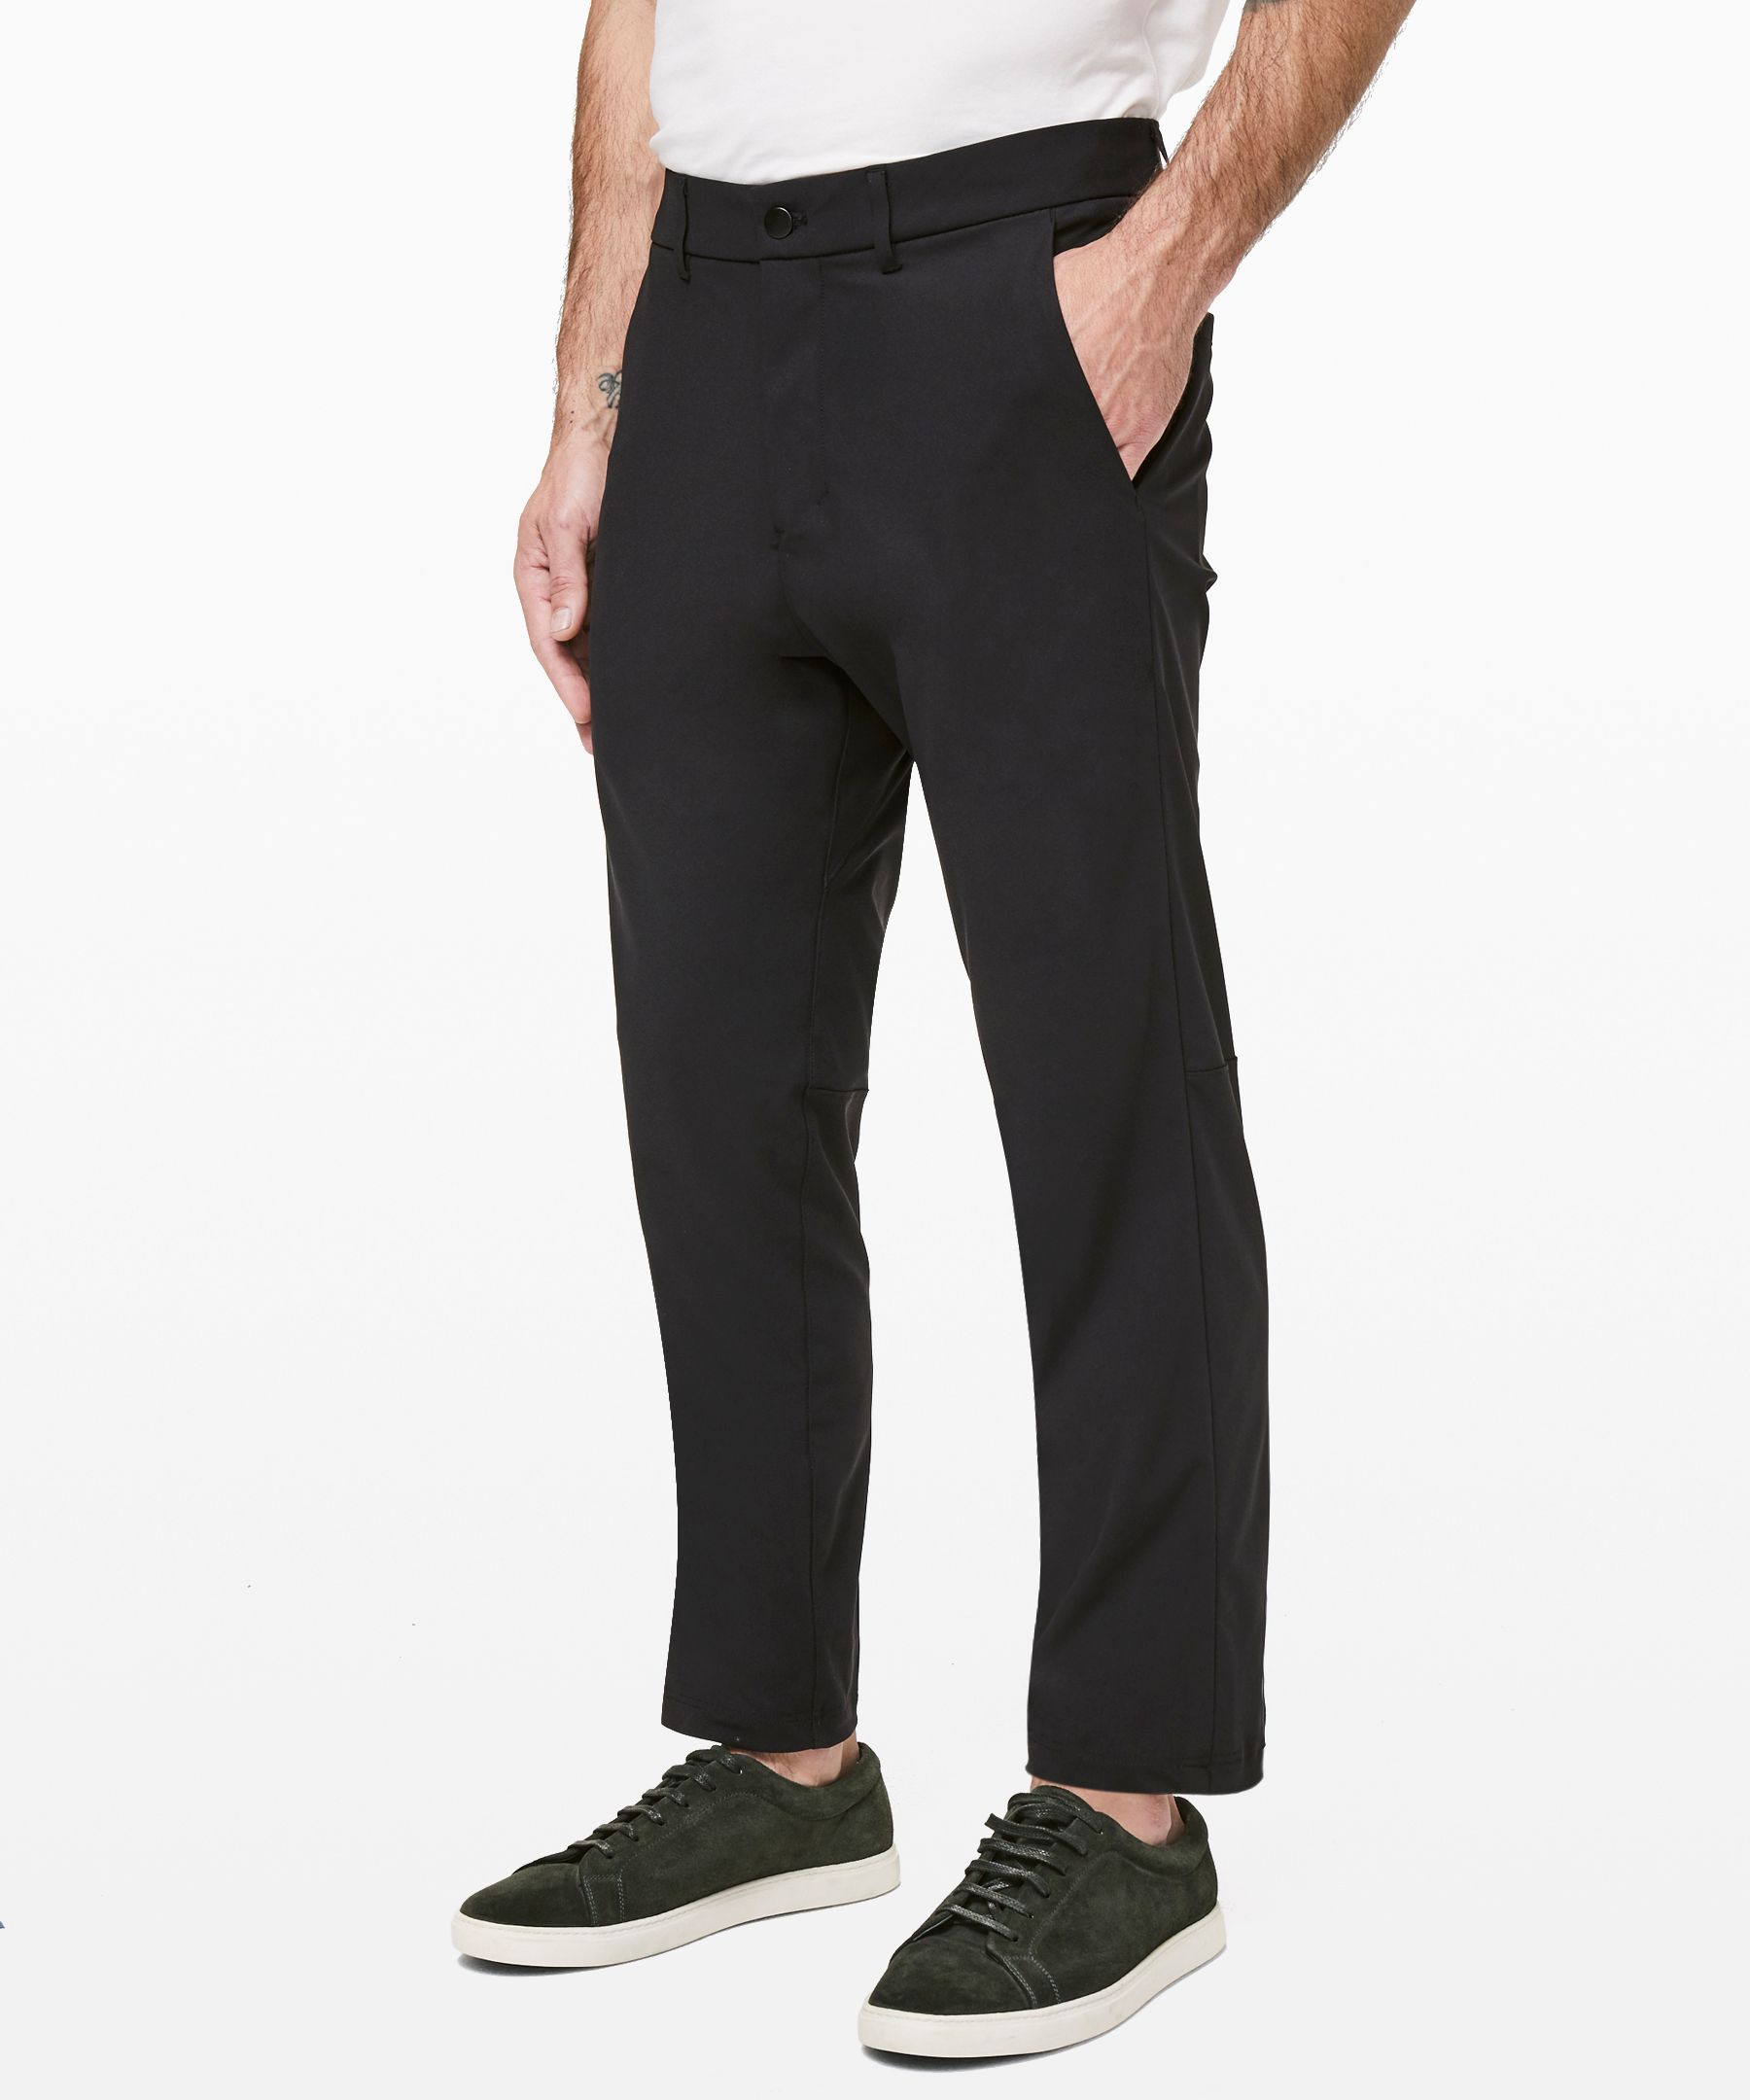 Lululemon Commission Slim-fit Pants 37" Warpstreme In Black